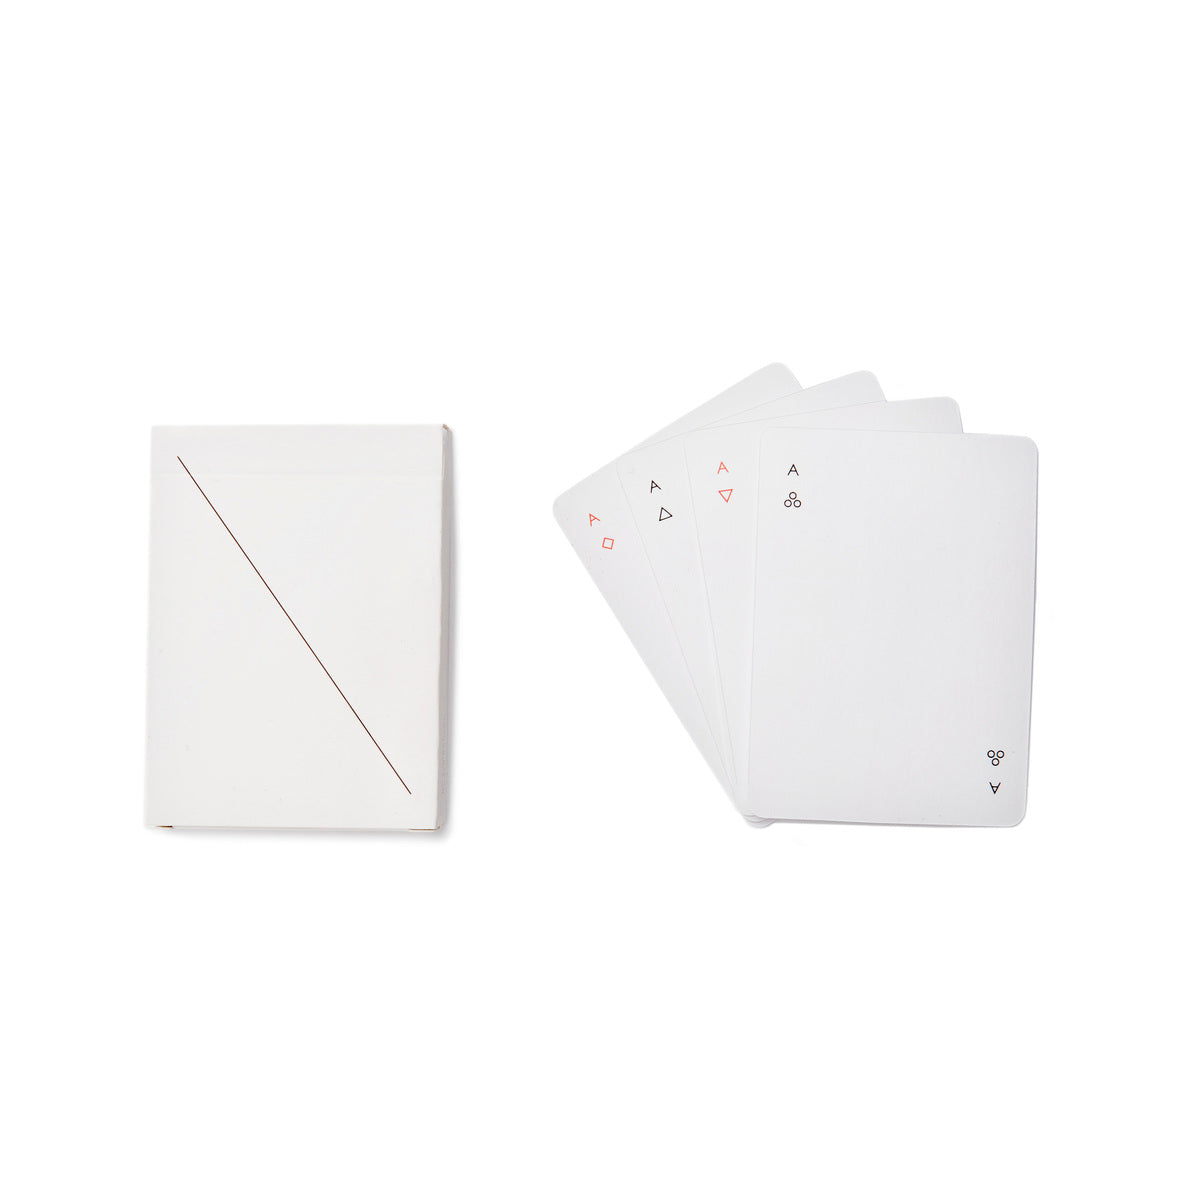 Minim Playing Cards White